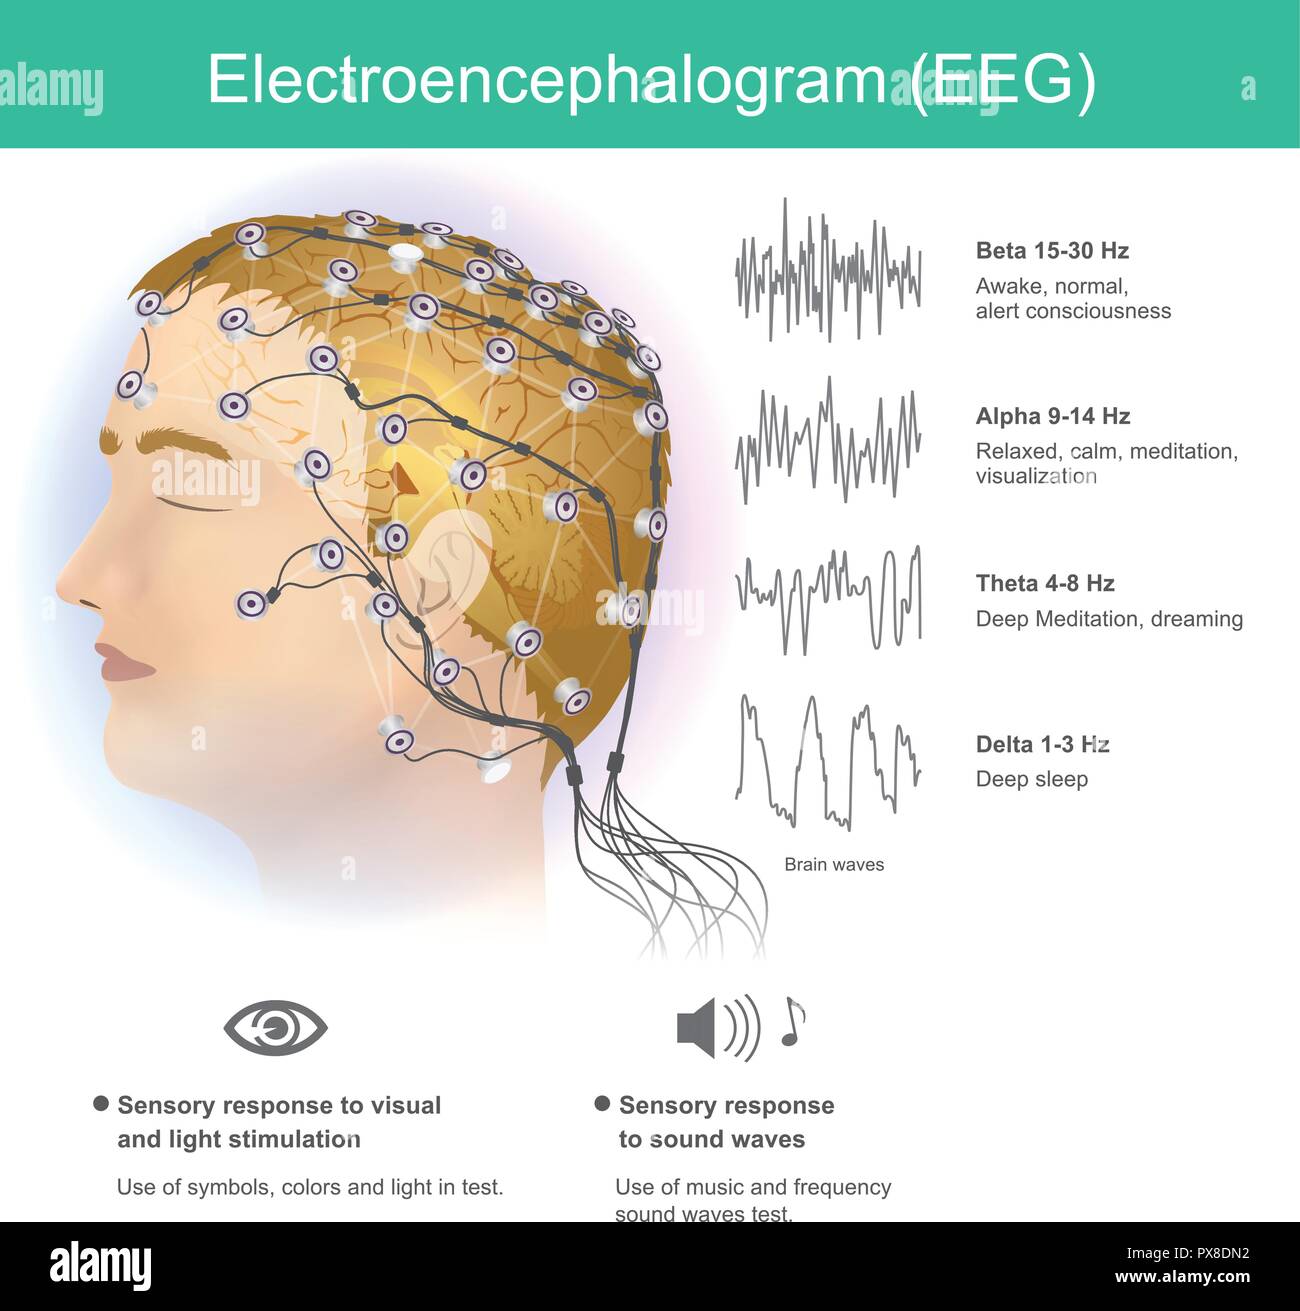 Die Verwendung von Elektroden kleine elektromagnetische Wellen aus dem menschlichen Gehirn zu lesen. Stock Vektor